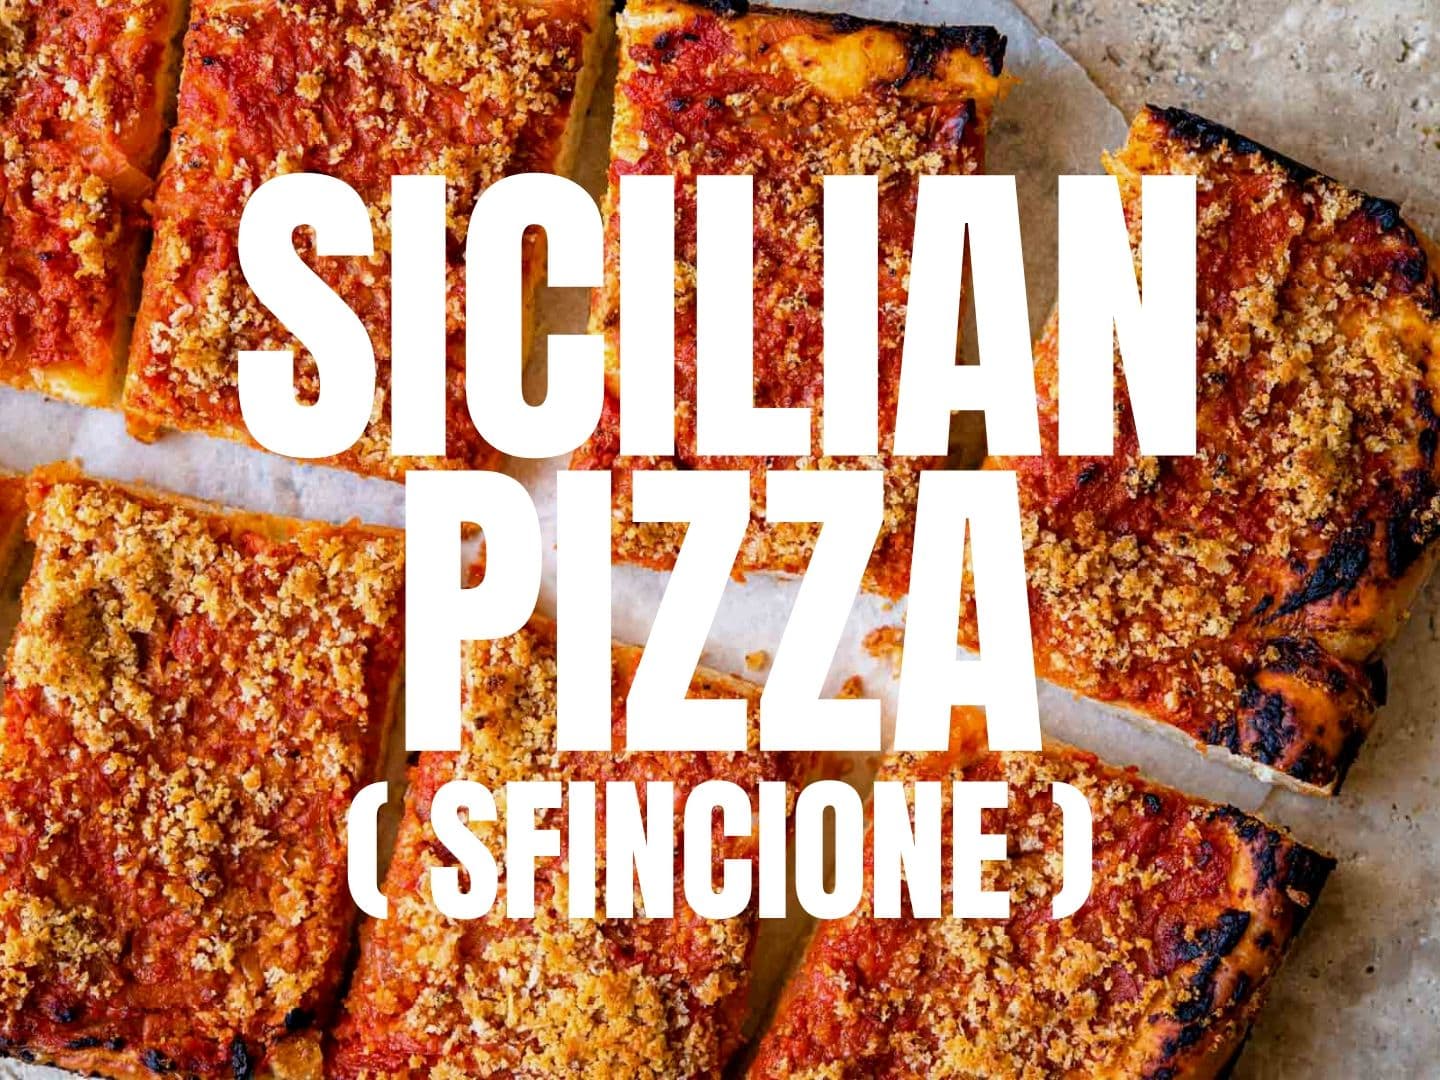 SFINCIONE: SICILIAN PIZZA RECIPE & HISTORY - all you need to know!